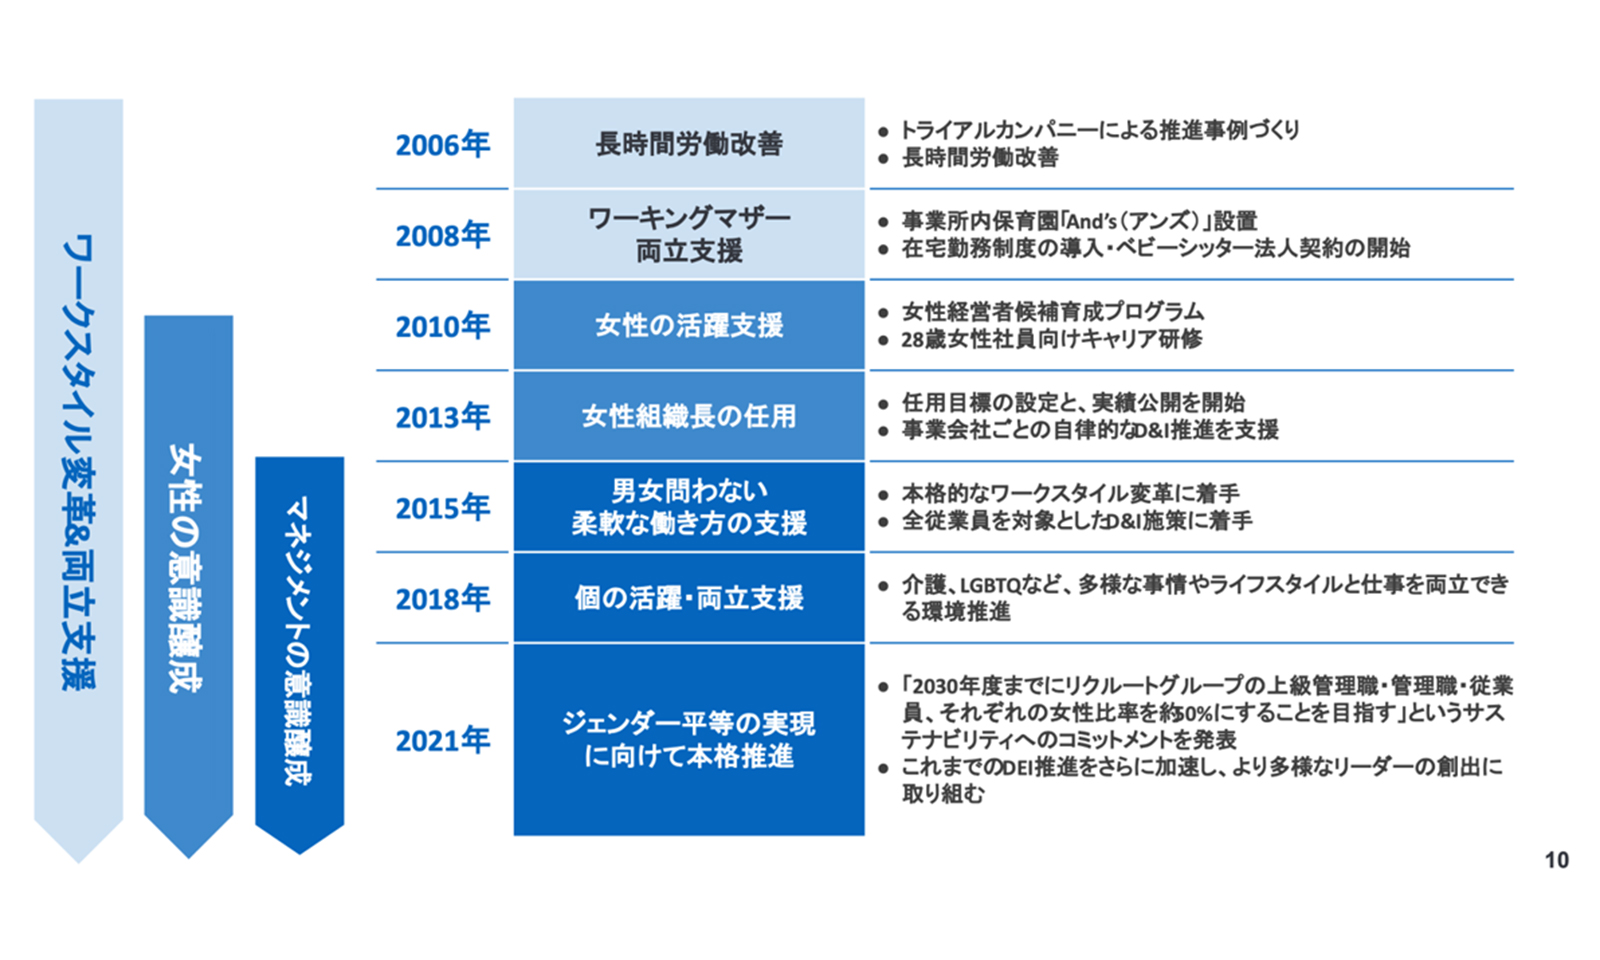 リクルートグループのDEI向上に向けた取り組みの軌跡。2006年から2021年の実施内容